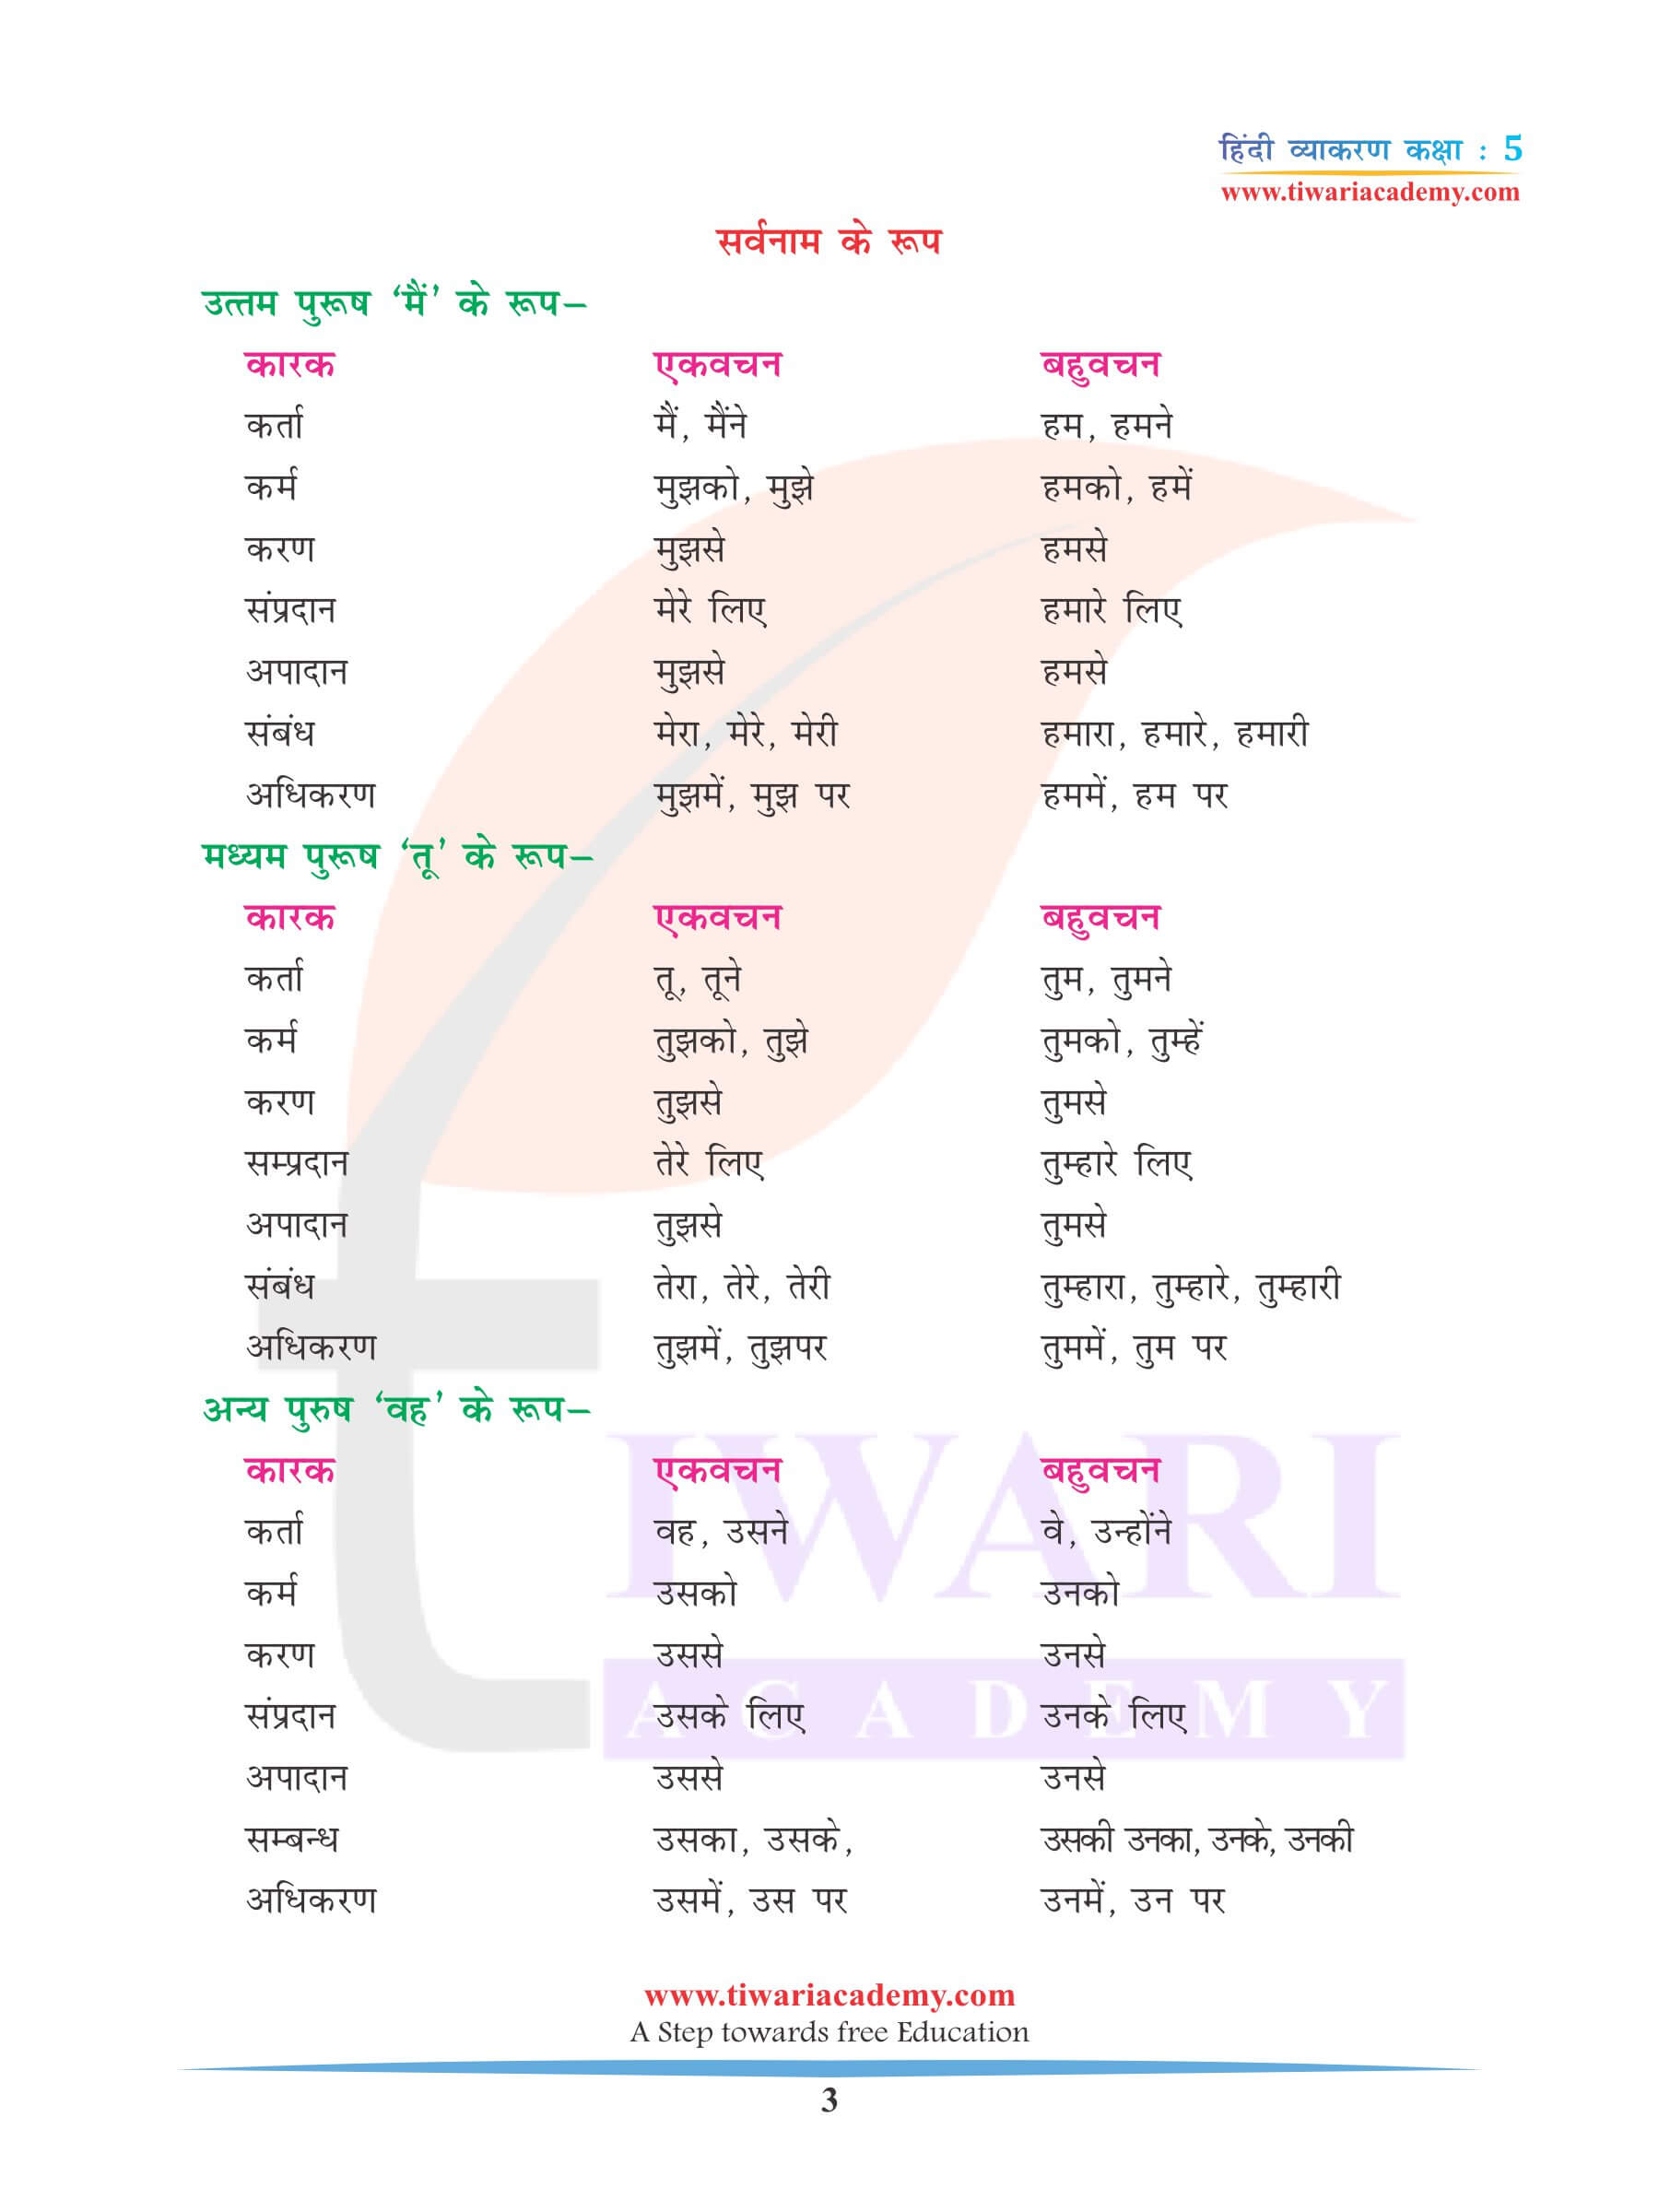 कक्षा 5 हिंदी व्याकरण सर्वनाम के लिए अभ्यास